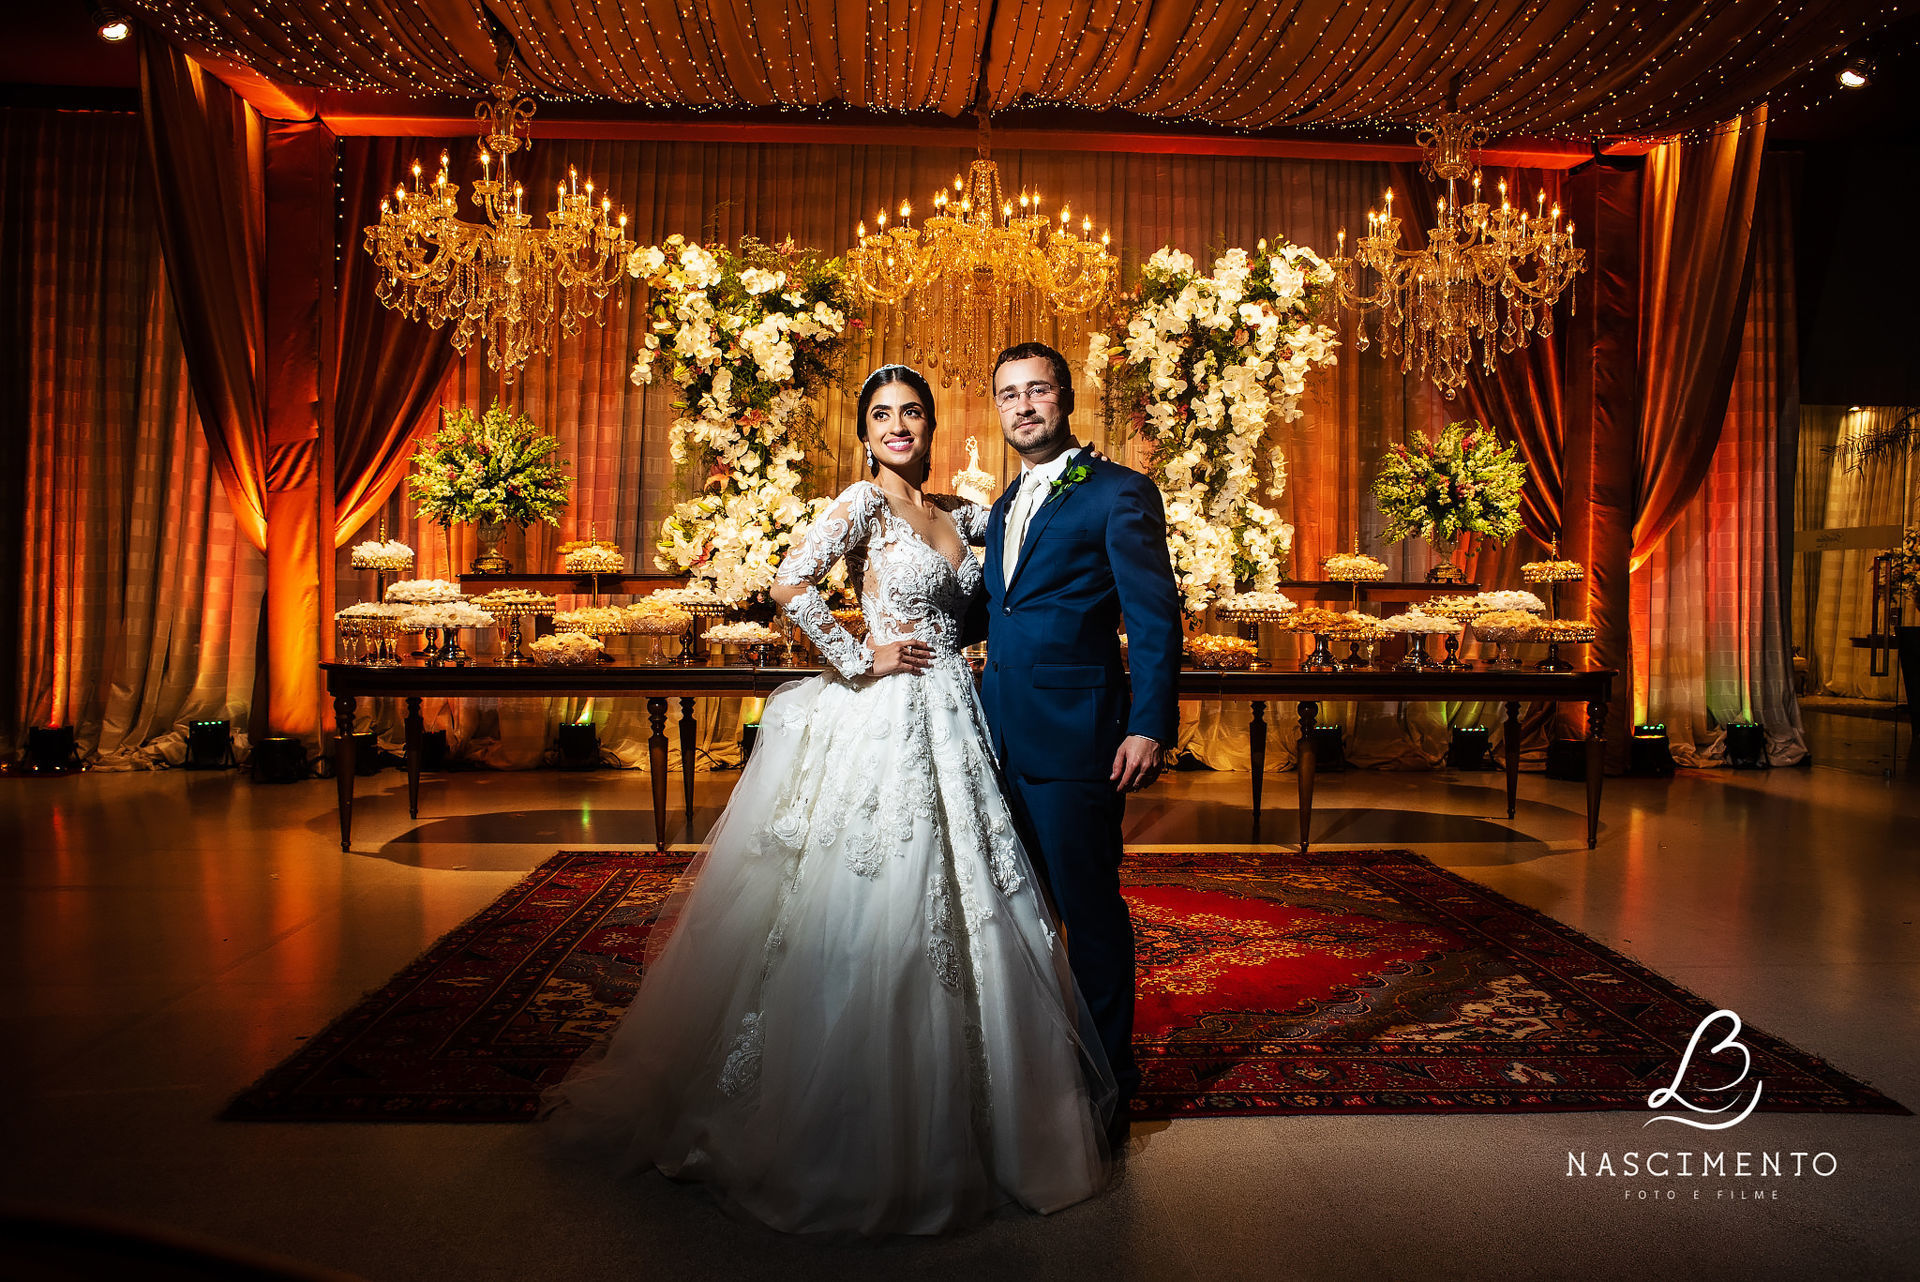 Casamento Vanessa e Fábio Trad / Igreja Ortodoxa / Golden Class  Fotógrafo  de casamentos, Campo Grande MS, Nascimento Fotografia, Beto Nascimento